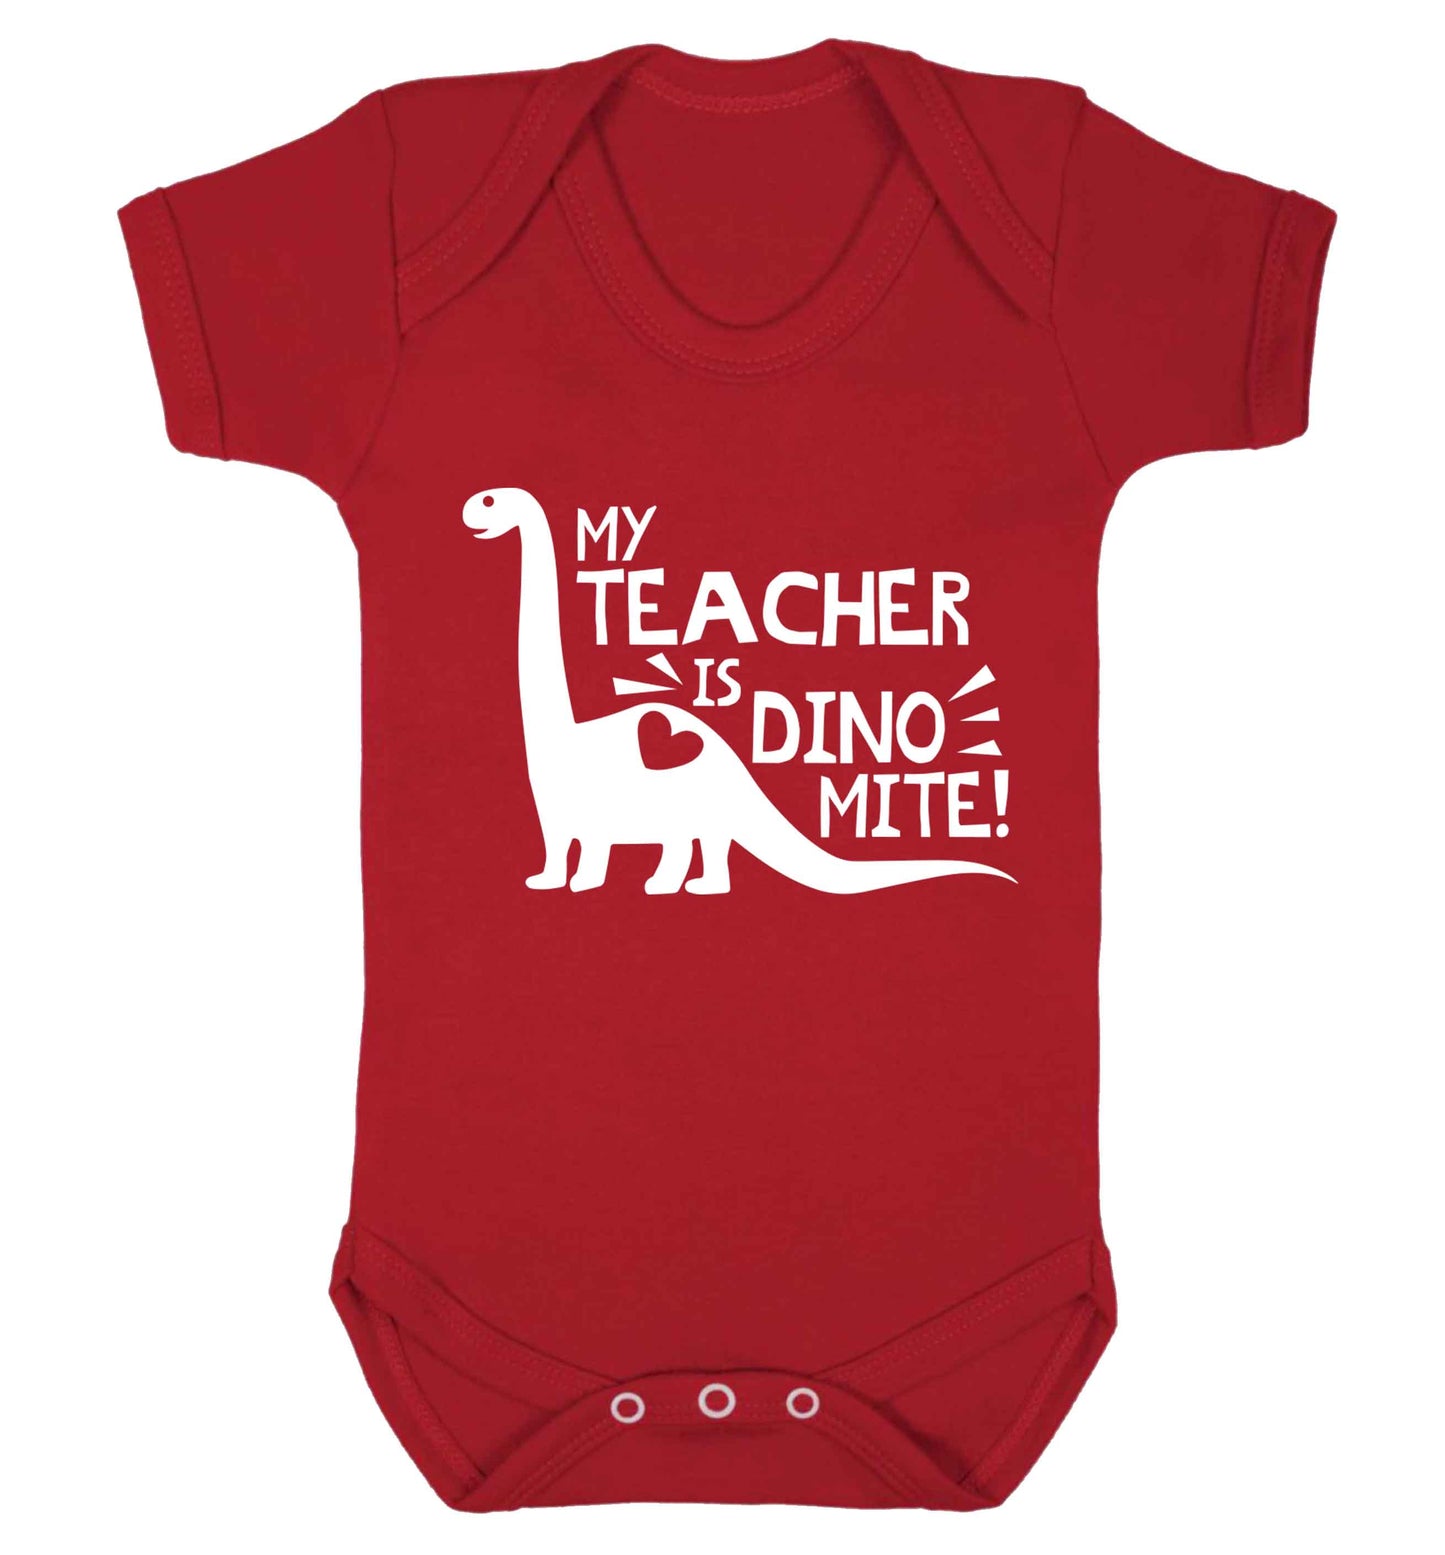 My teacher is dinomite! Baby Vest red 18-24 months